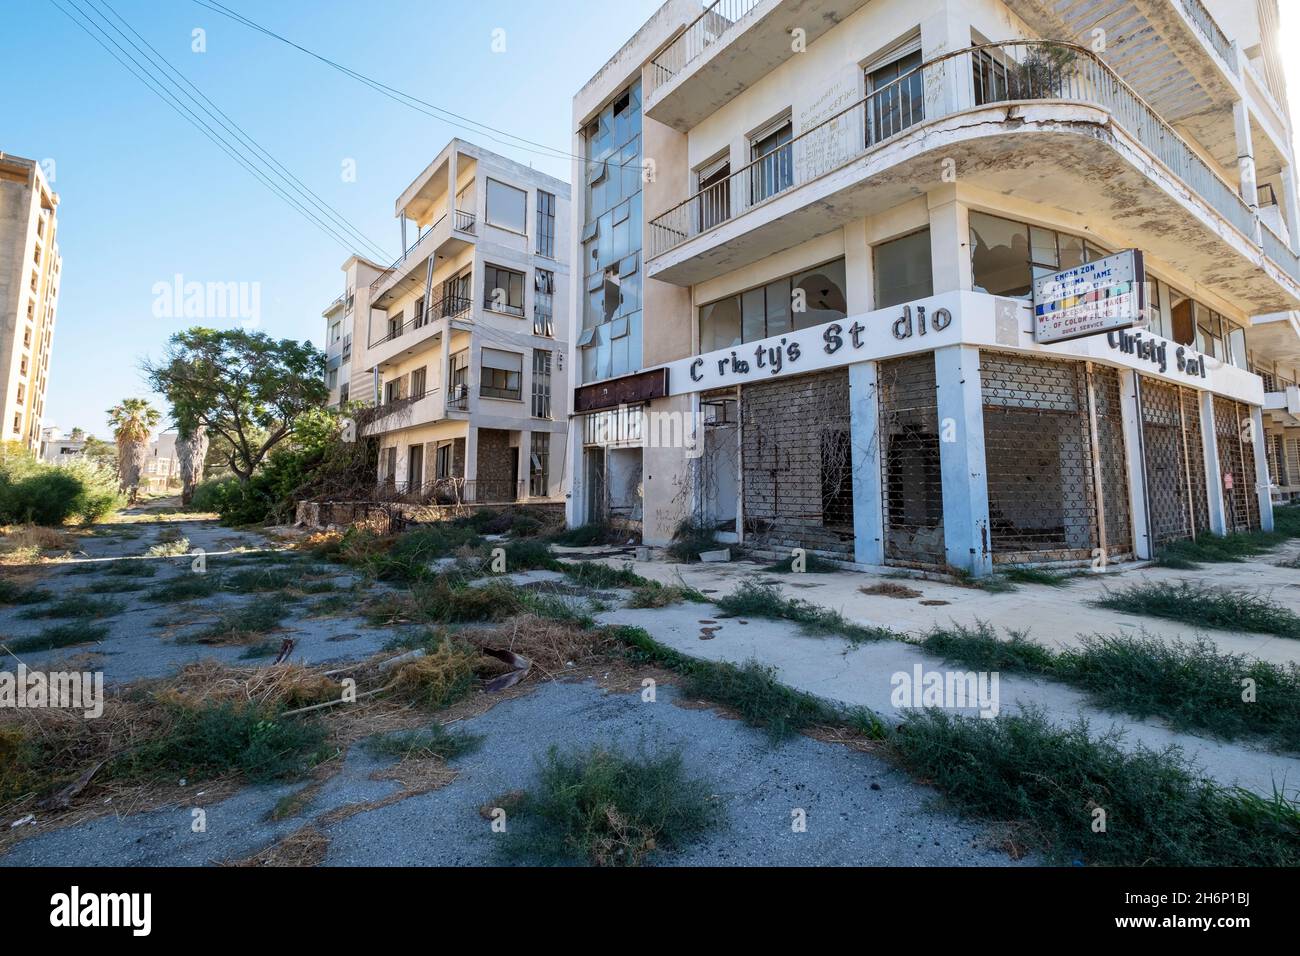 Città abbandonata di Varosha, Famagosta, Cipro era stata chiusa al mondo dall'invasione turca nel 1974 fino alla sua apertura nell'ottobre 2020. Foto Stock